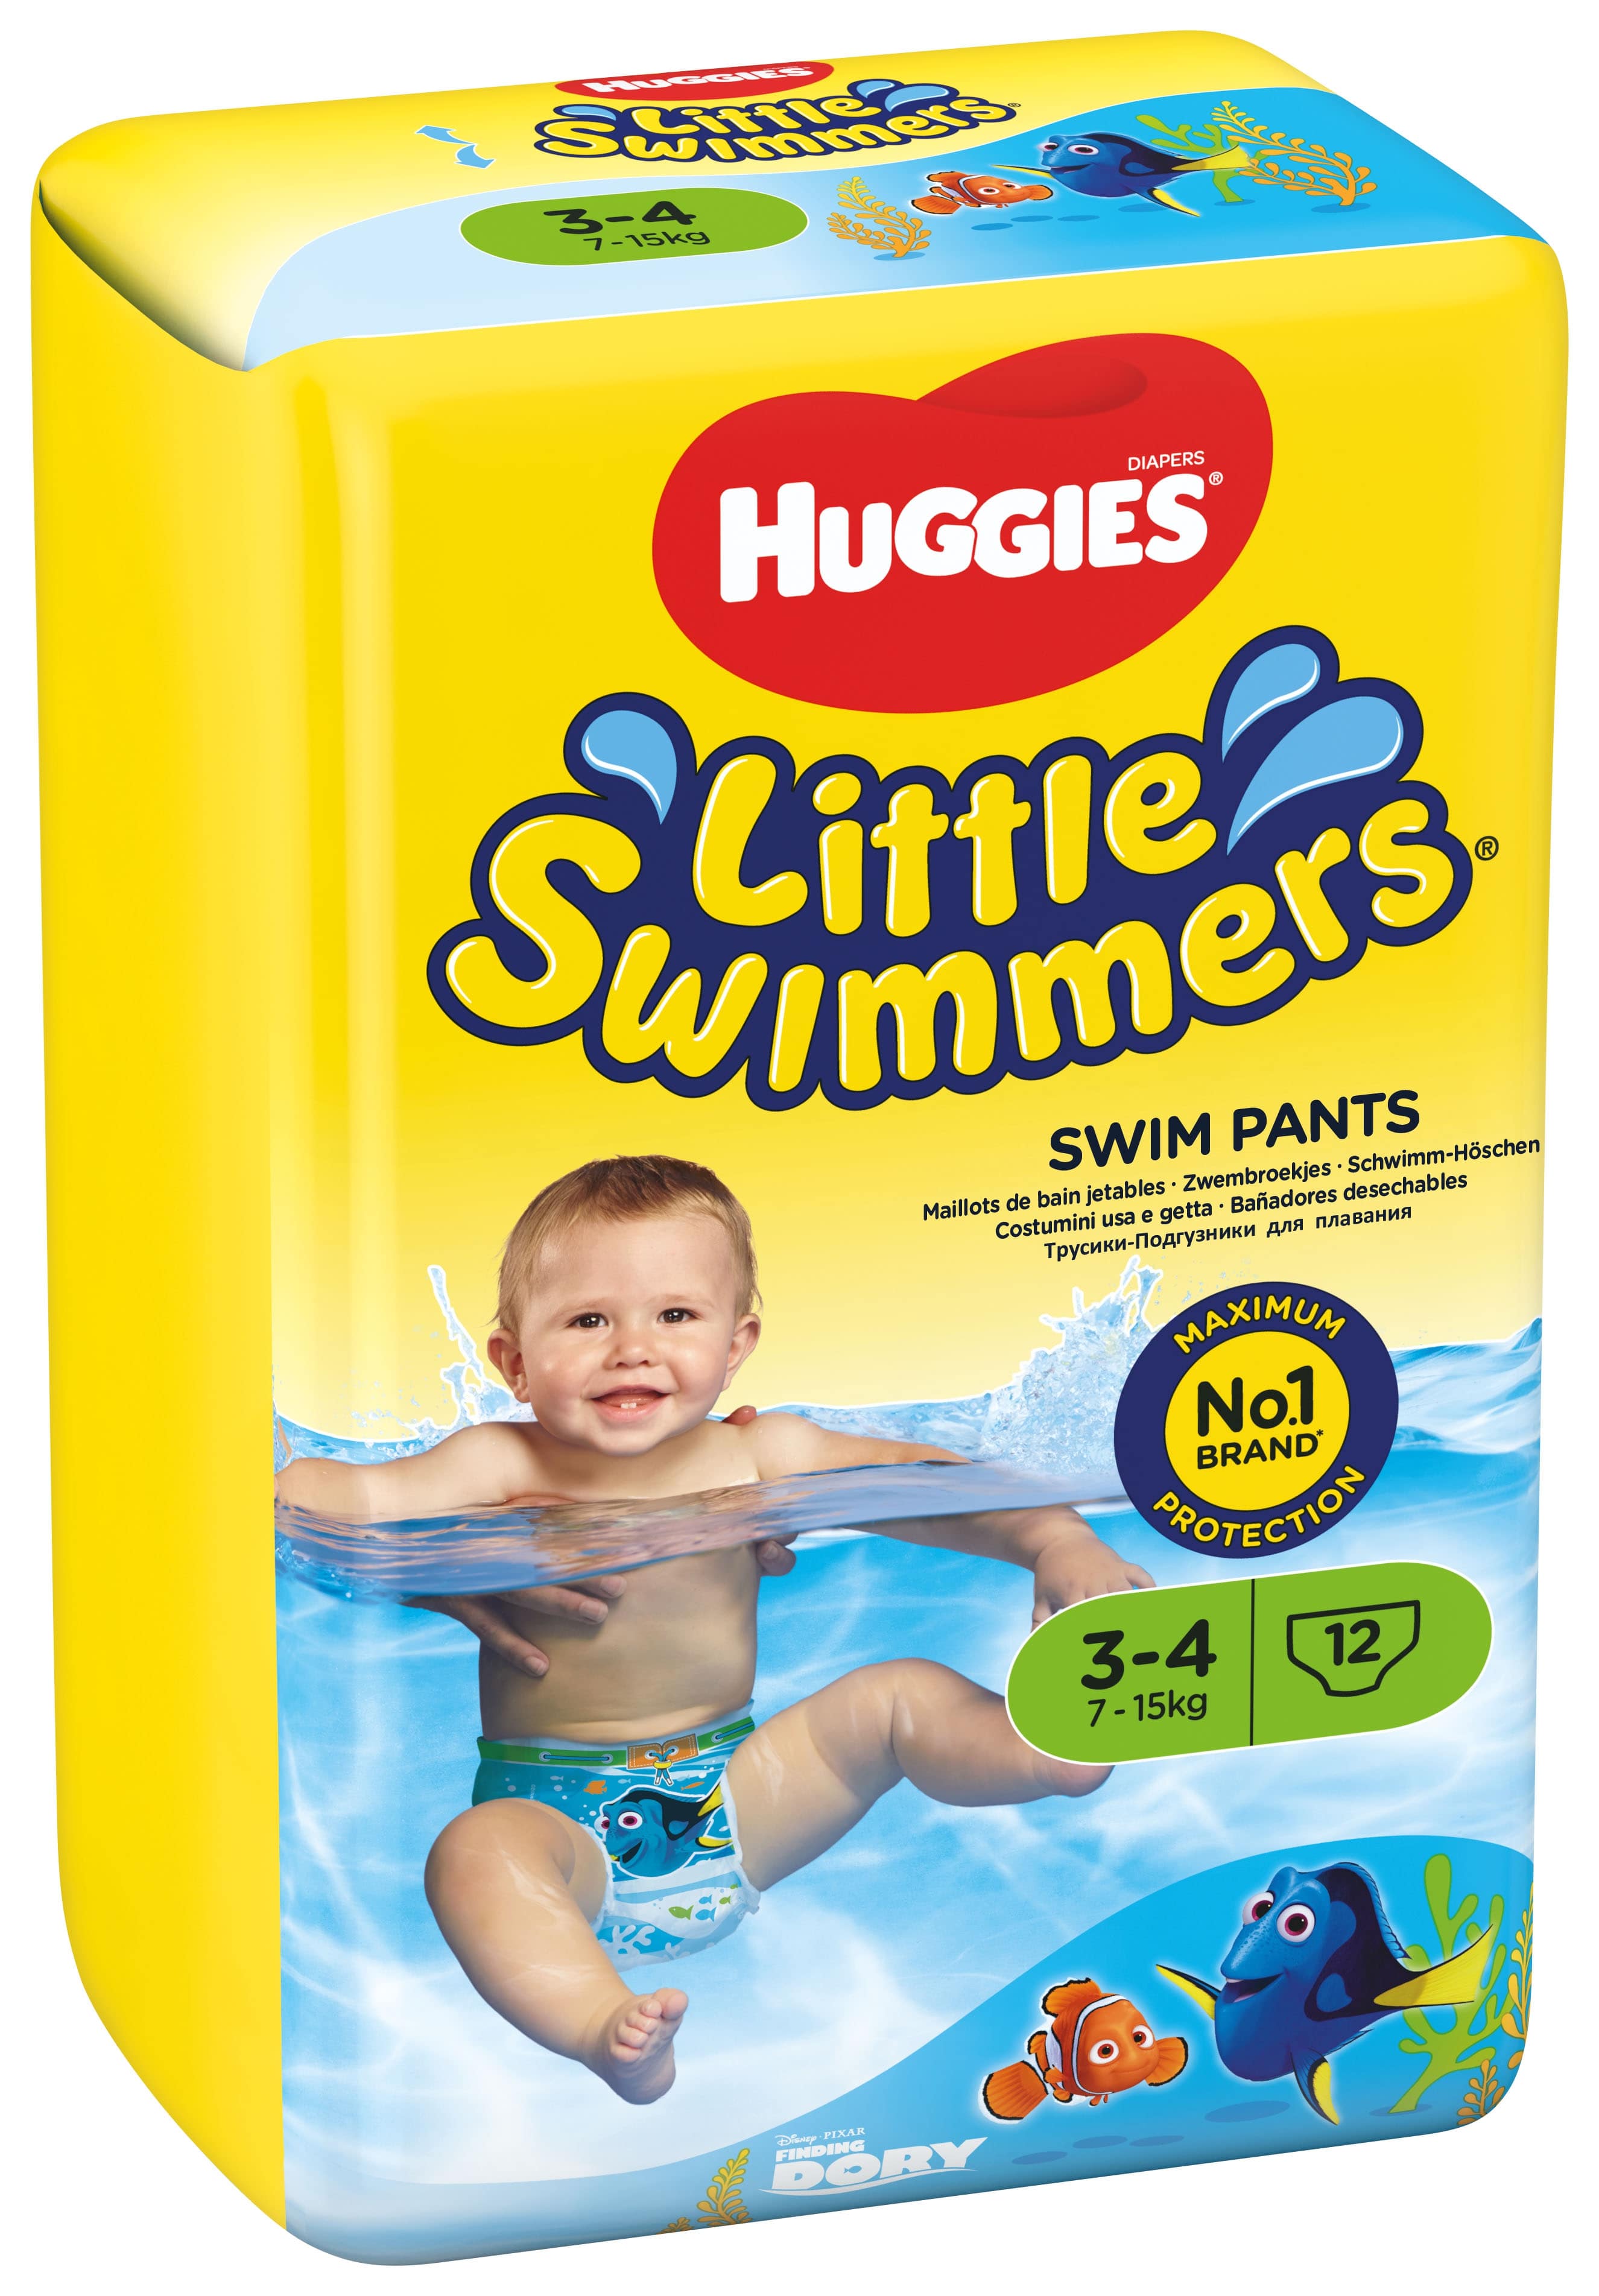 36 Stück Huggies Little Swimmers Einweg einzeln verpackte Schwimmwindeln Größe 3-4 